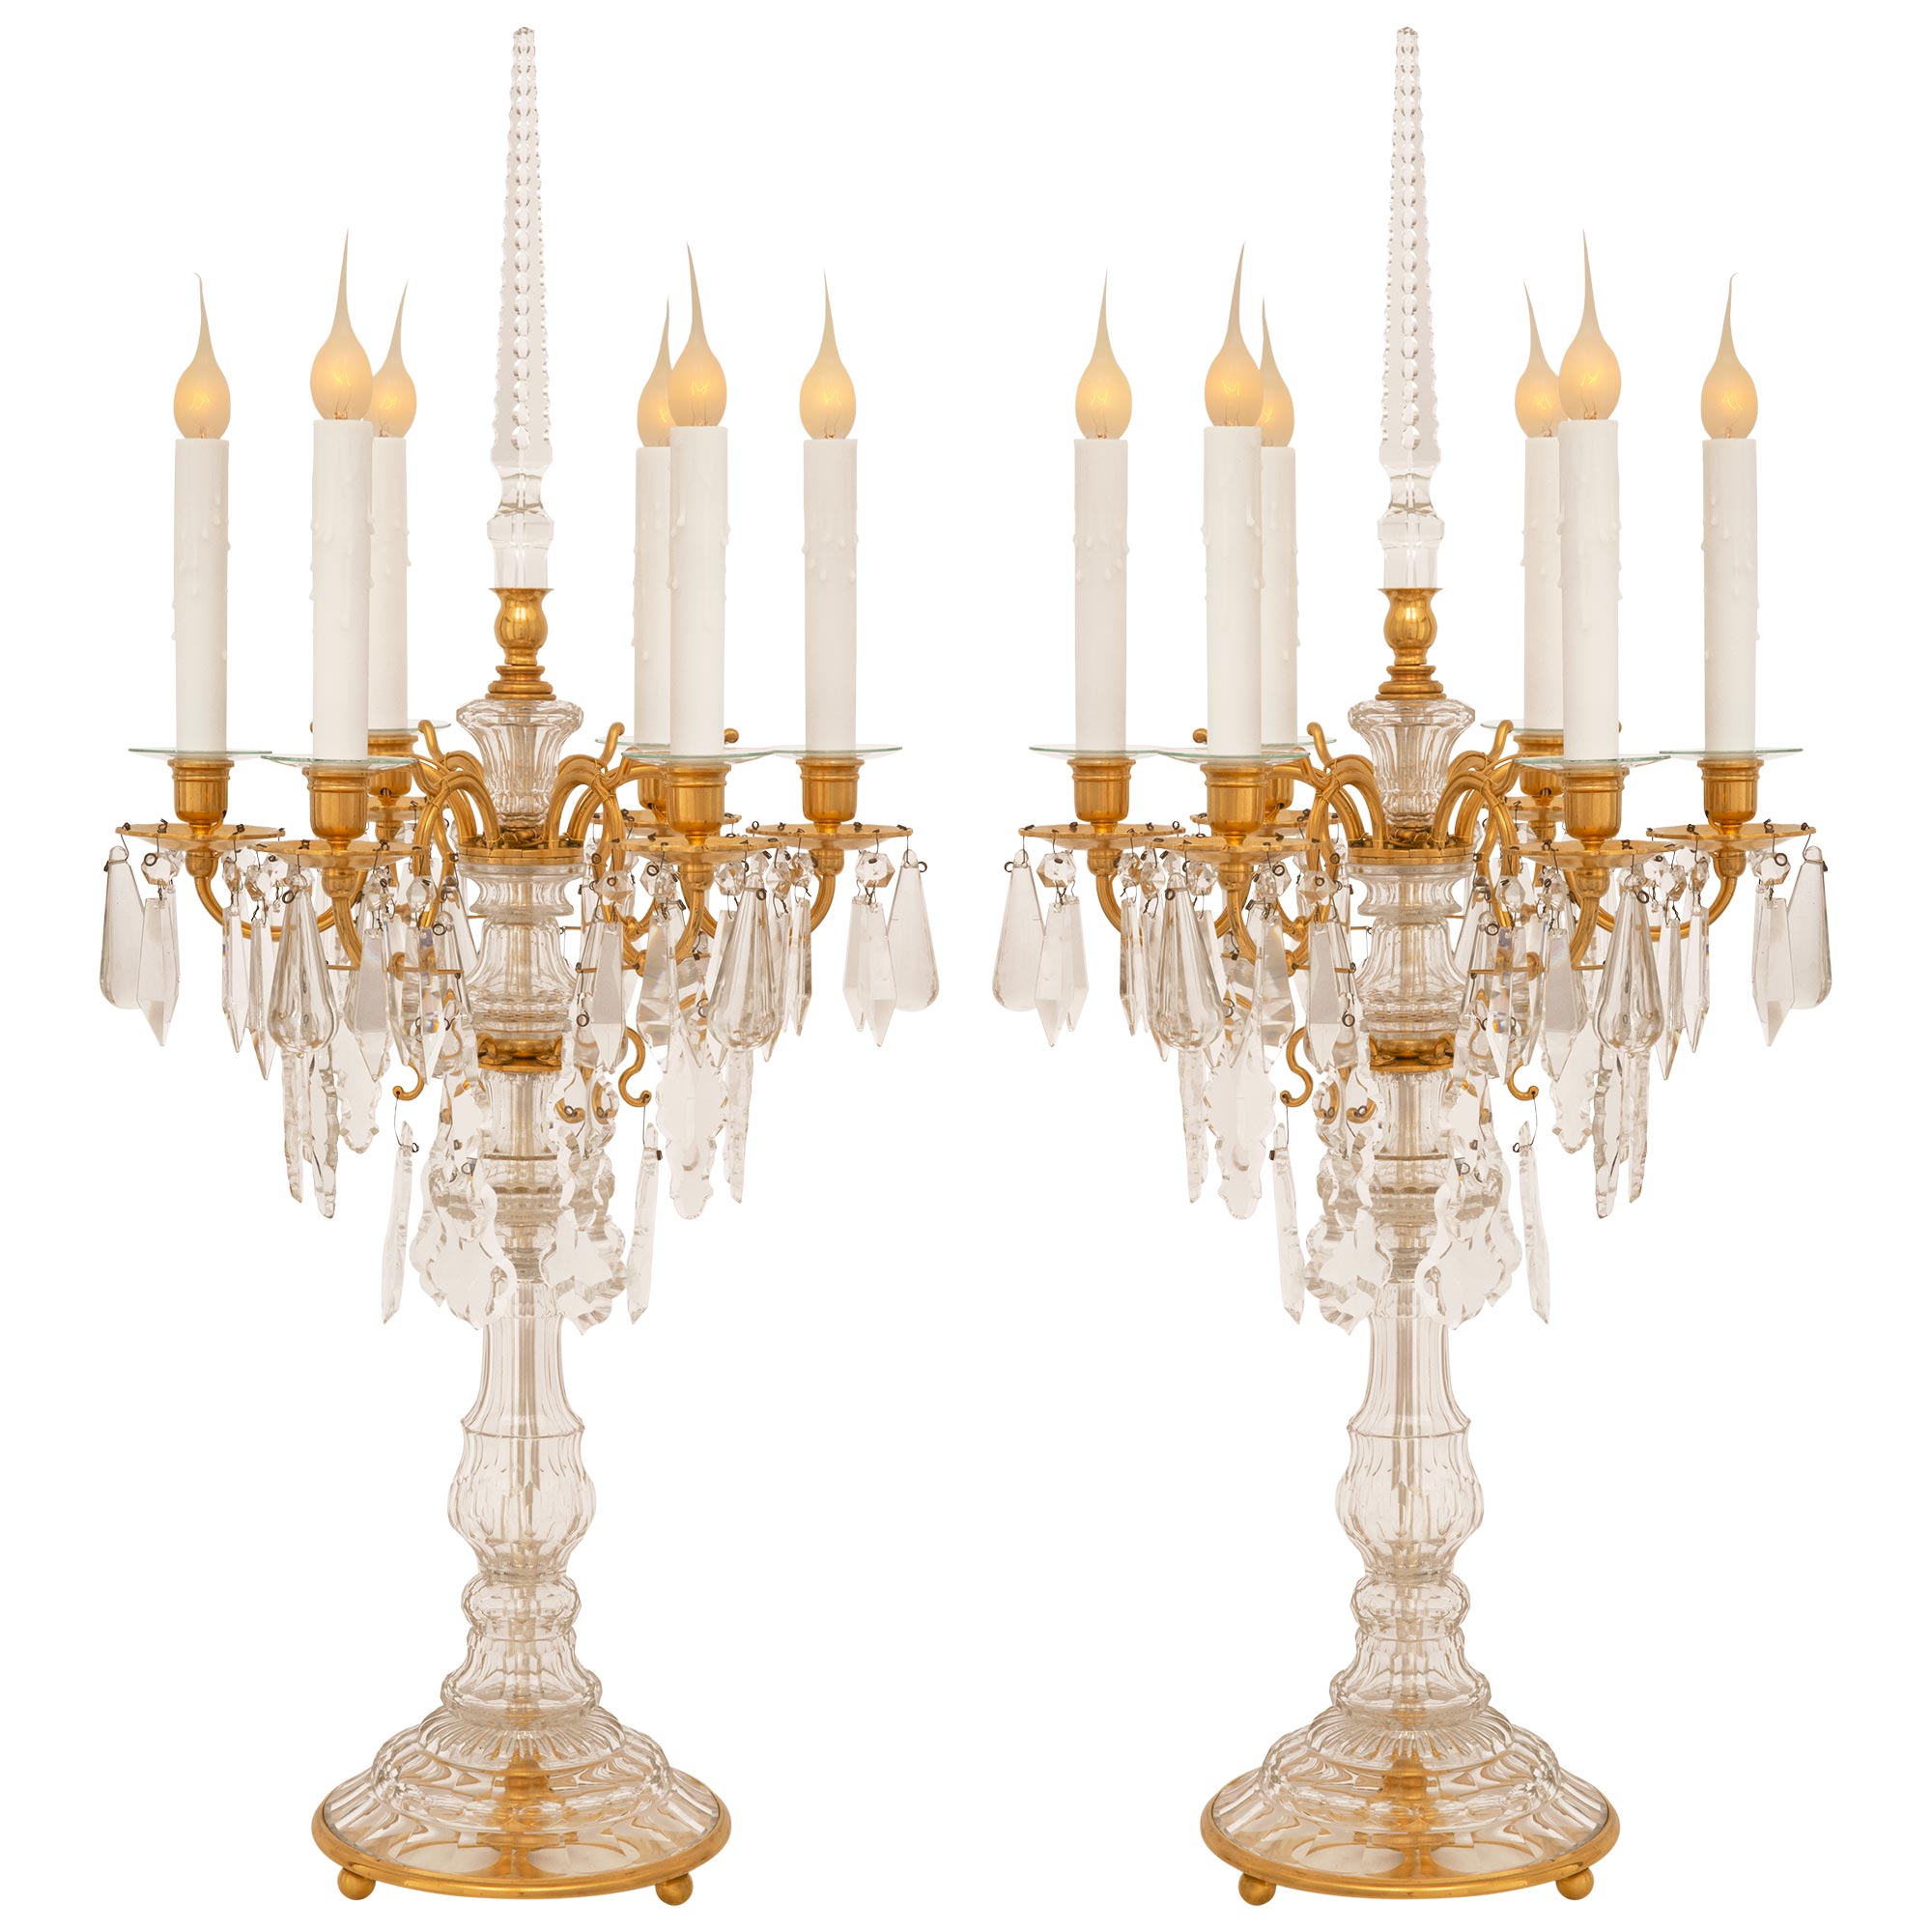 Paire de candélabres de style Louis XVI du 19ème siècle en bronze doré et cristal